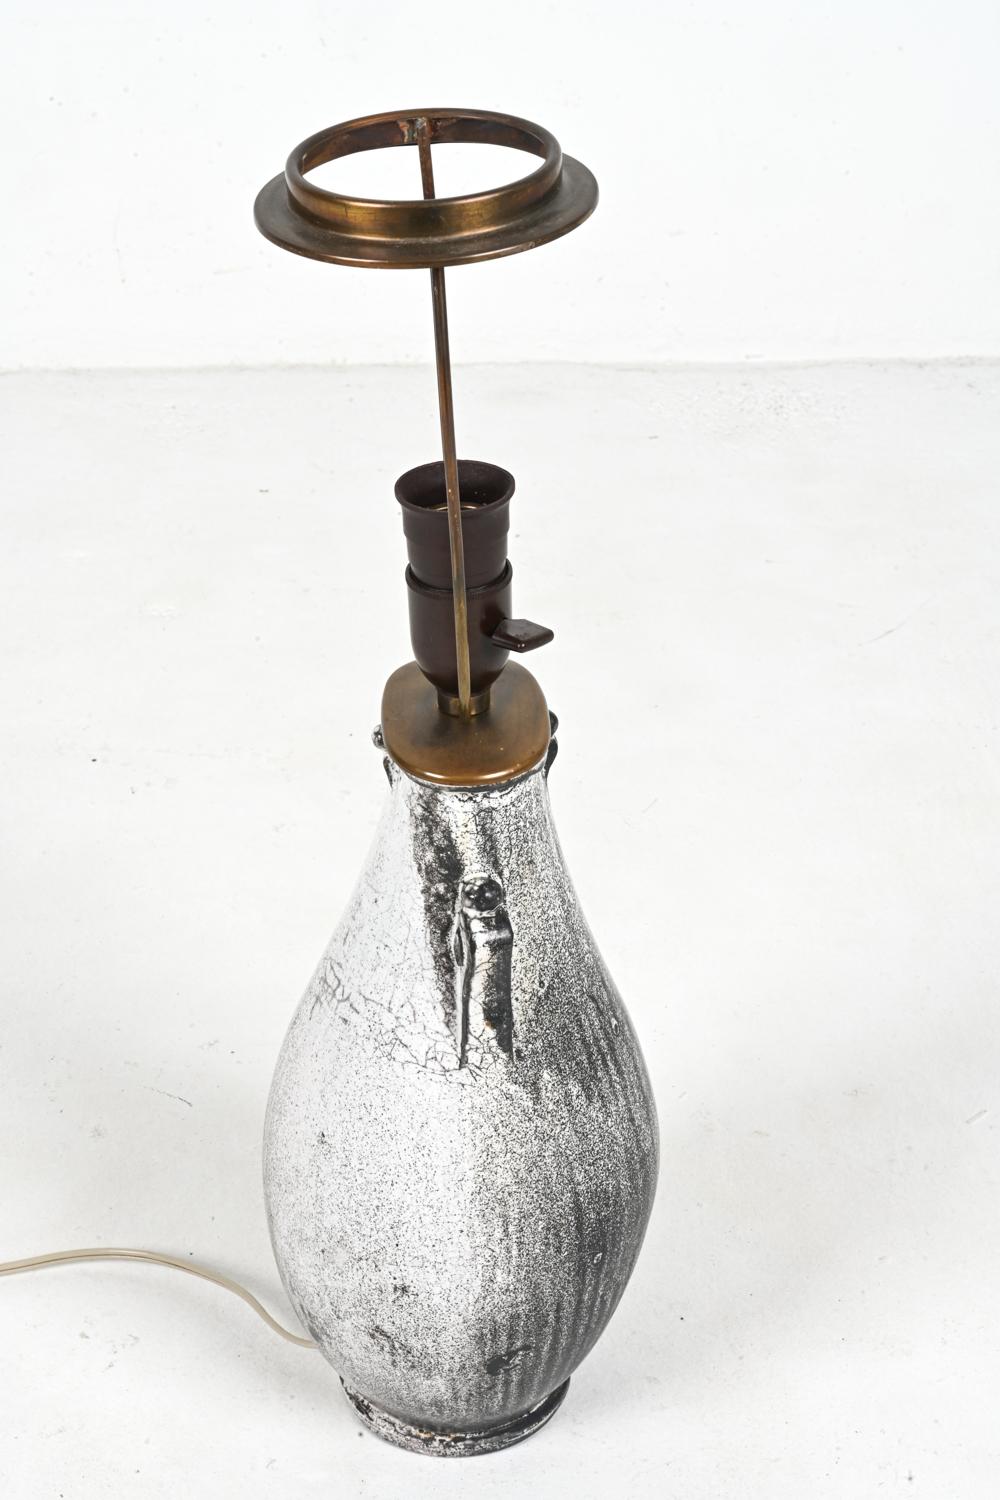 Rare Studio Ceramic Lamp by Svend Hammershøi for Kähler, Denmark, c. 1940 For Sale 8